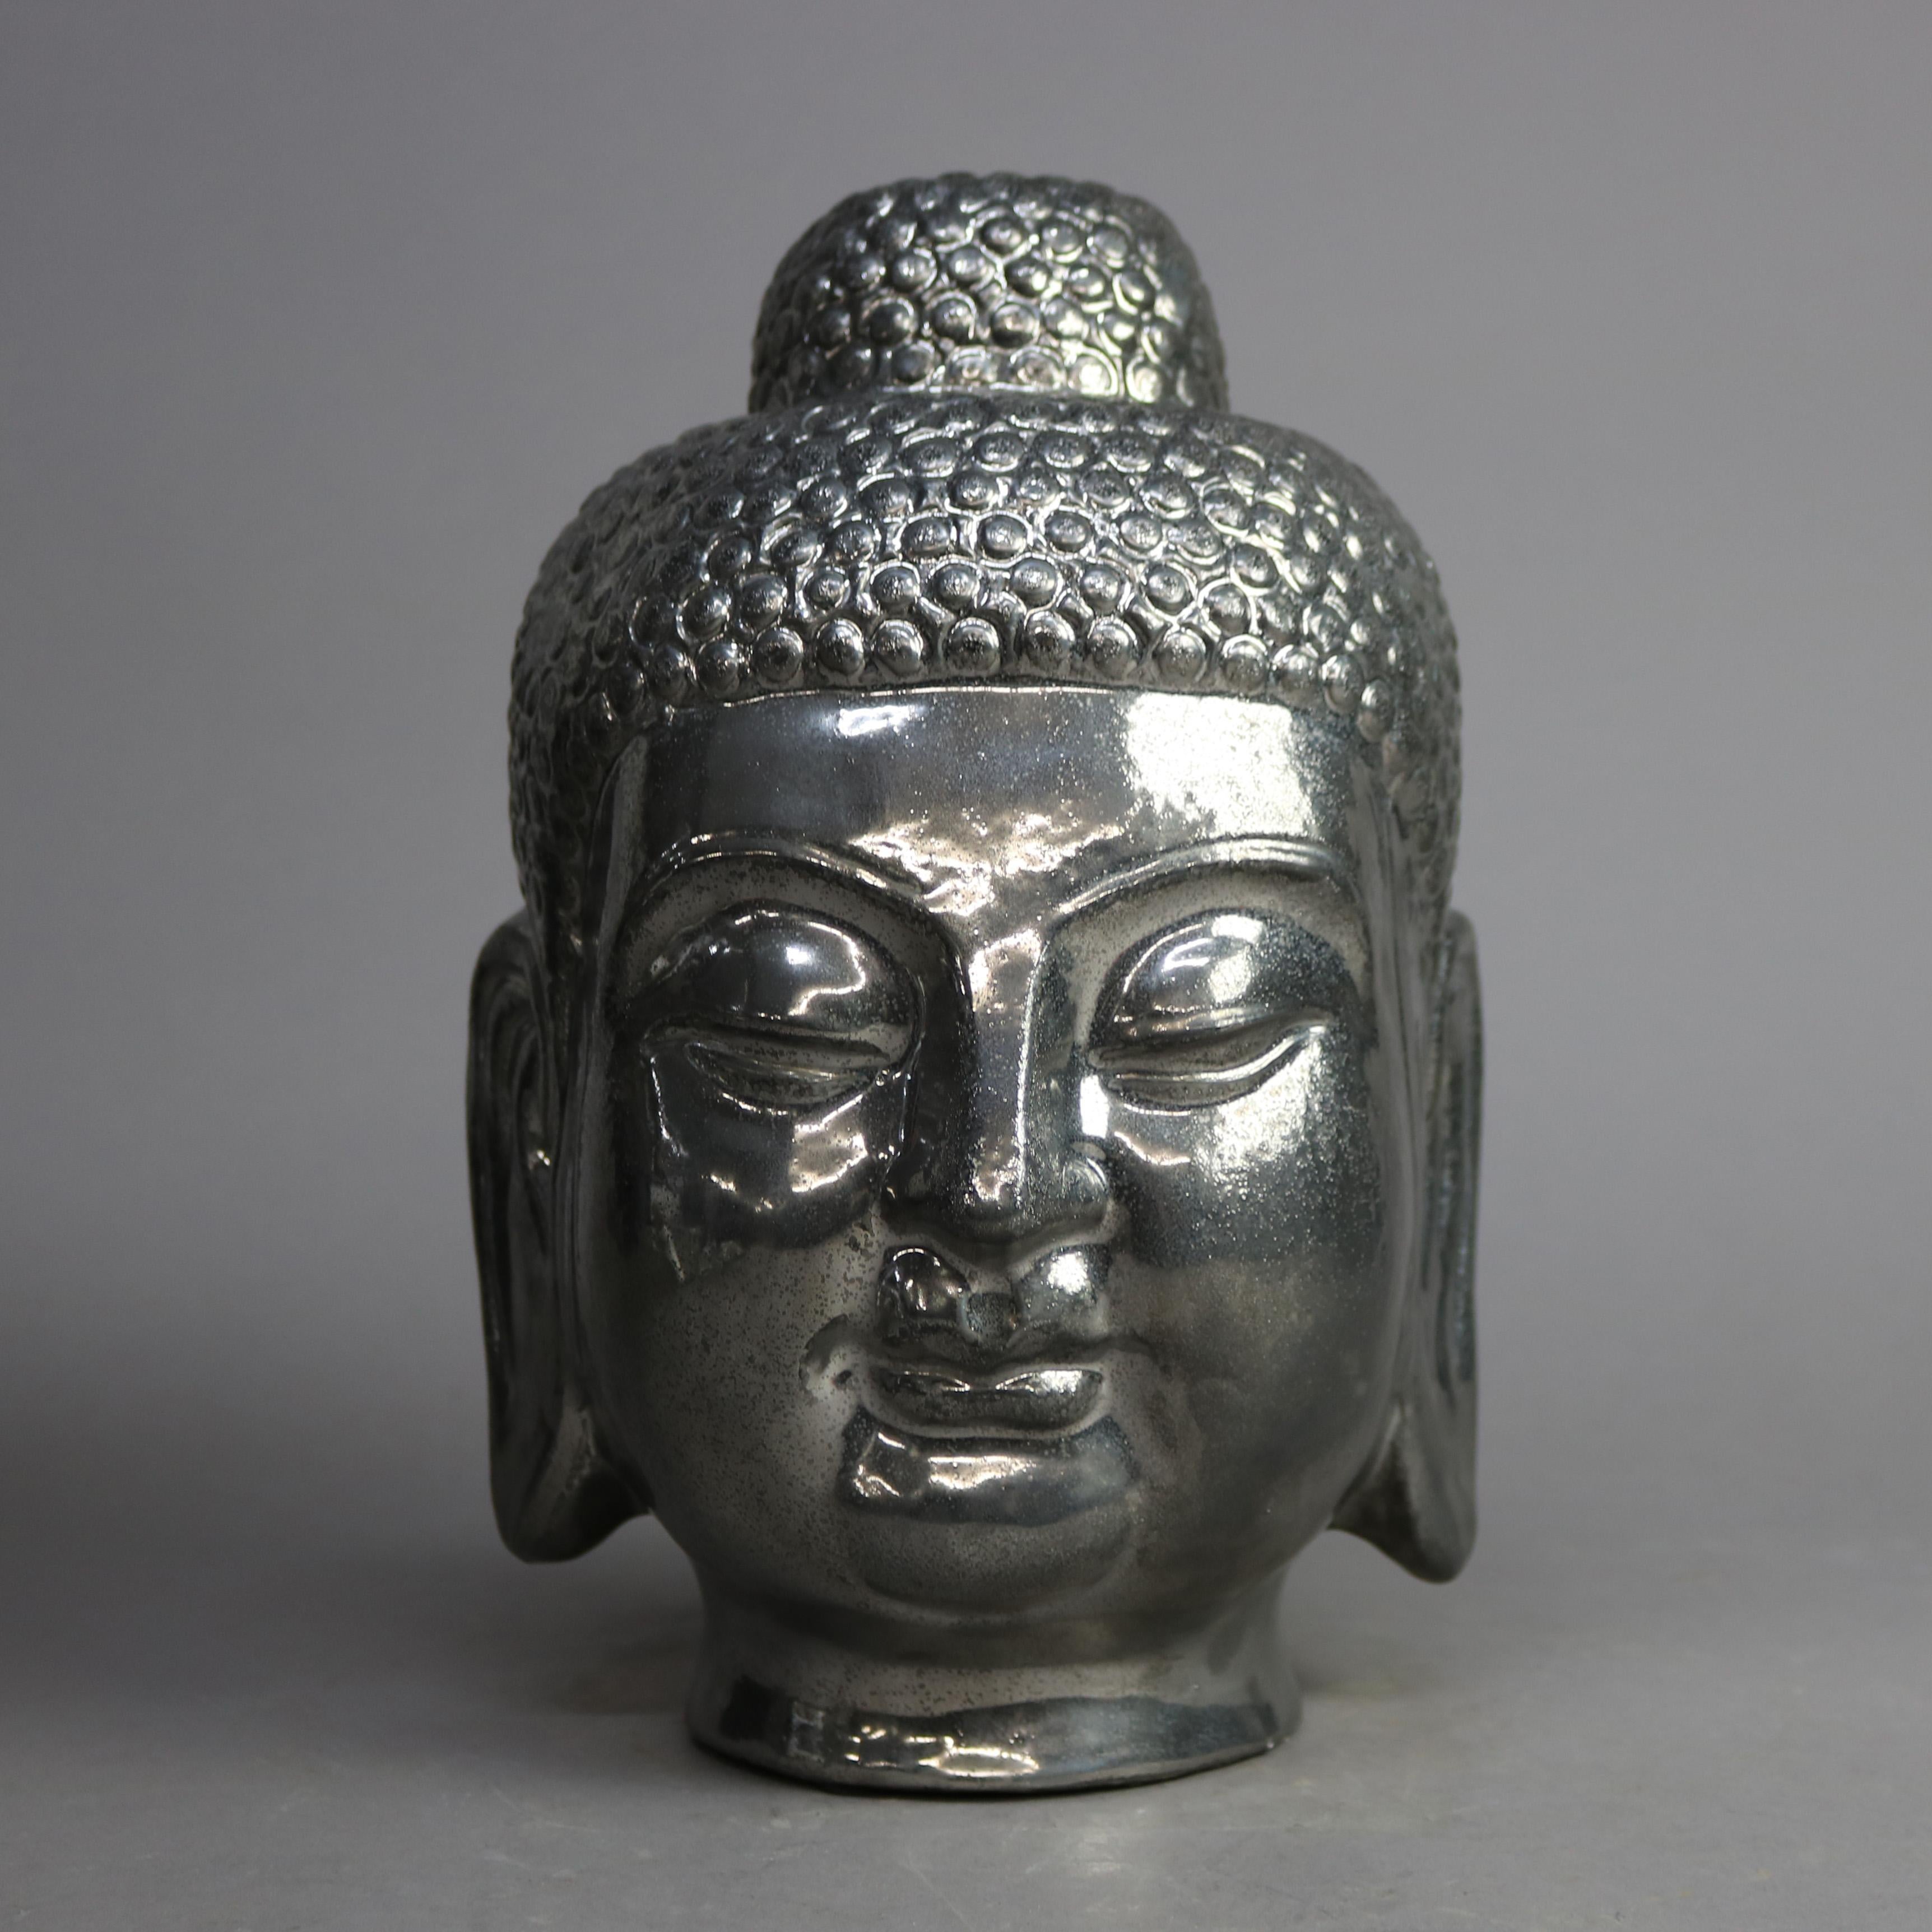 Un buste tibétain offre un buste de Bouddha en céramique argentée et dorée, 20ème siècle

Mesures - 13''H x 8''W x 8.5''D.

Note sur le catalogue : Demandez les TARIFS DE LIVRAISON RÉDUITS disponibles dans la plupart des régions situées à moins de 1